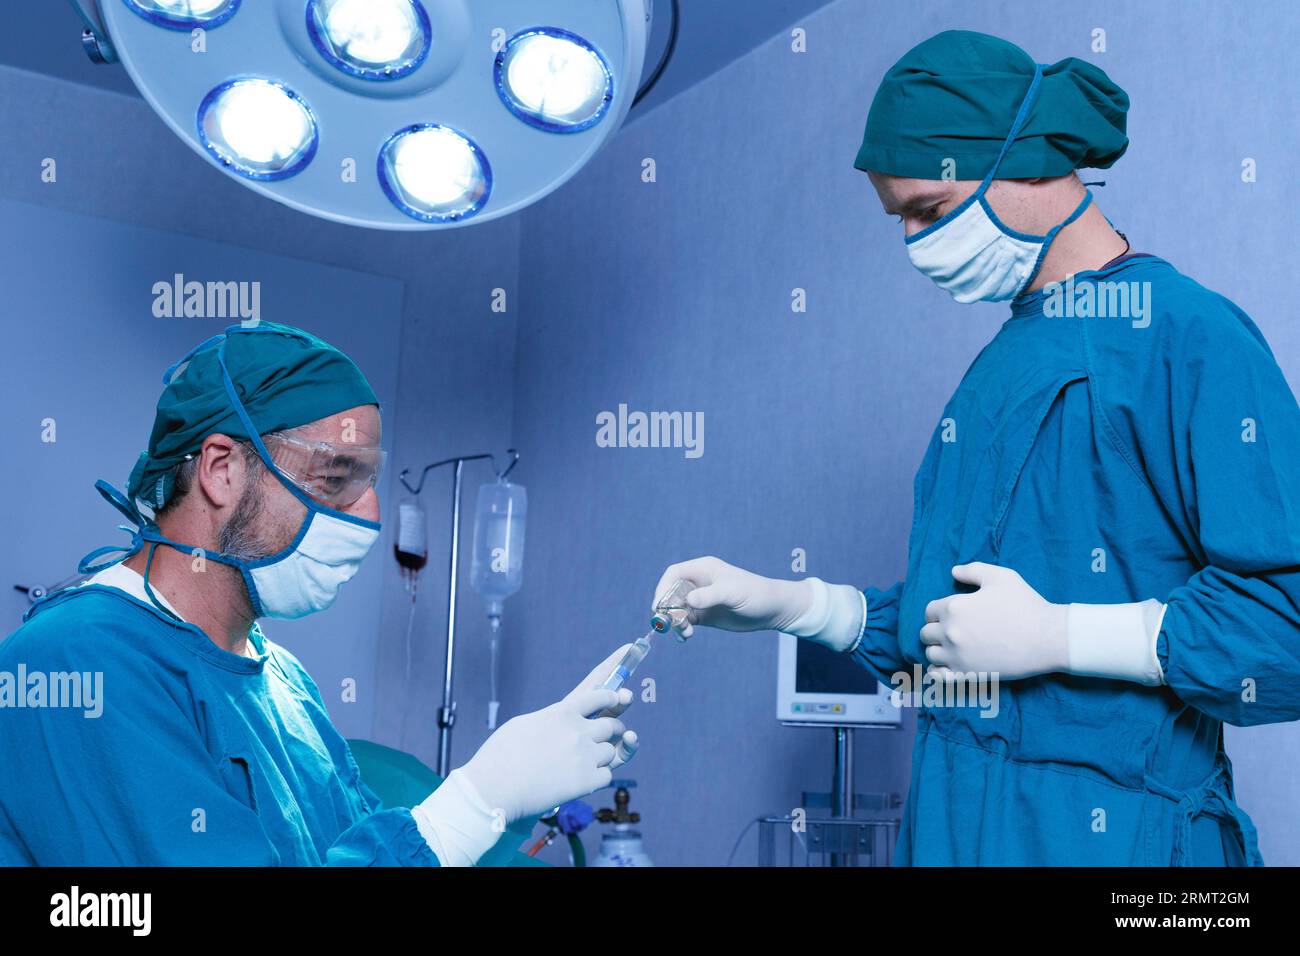 Professioneller Arzt hält Vollnarkose Medizin oder antivirale Arzneimittel Impfstoffnadel Spritze für den Patienten vor der Operation im Operationssaal bei t Stockfoto